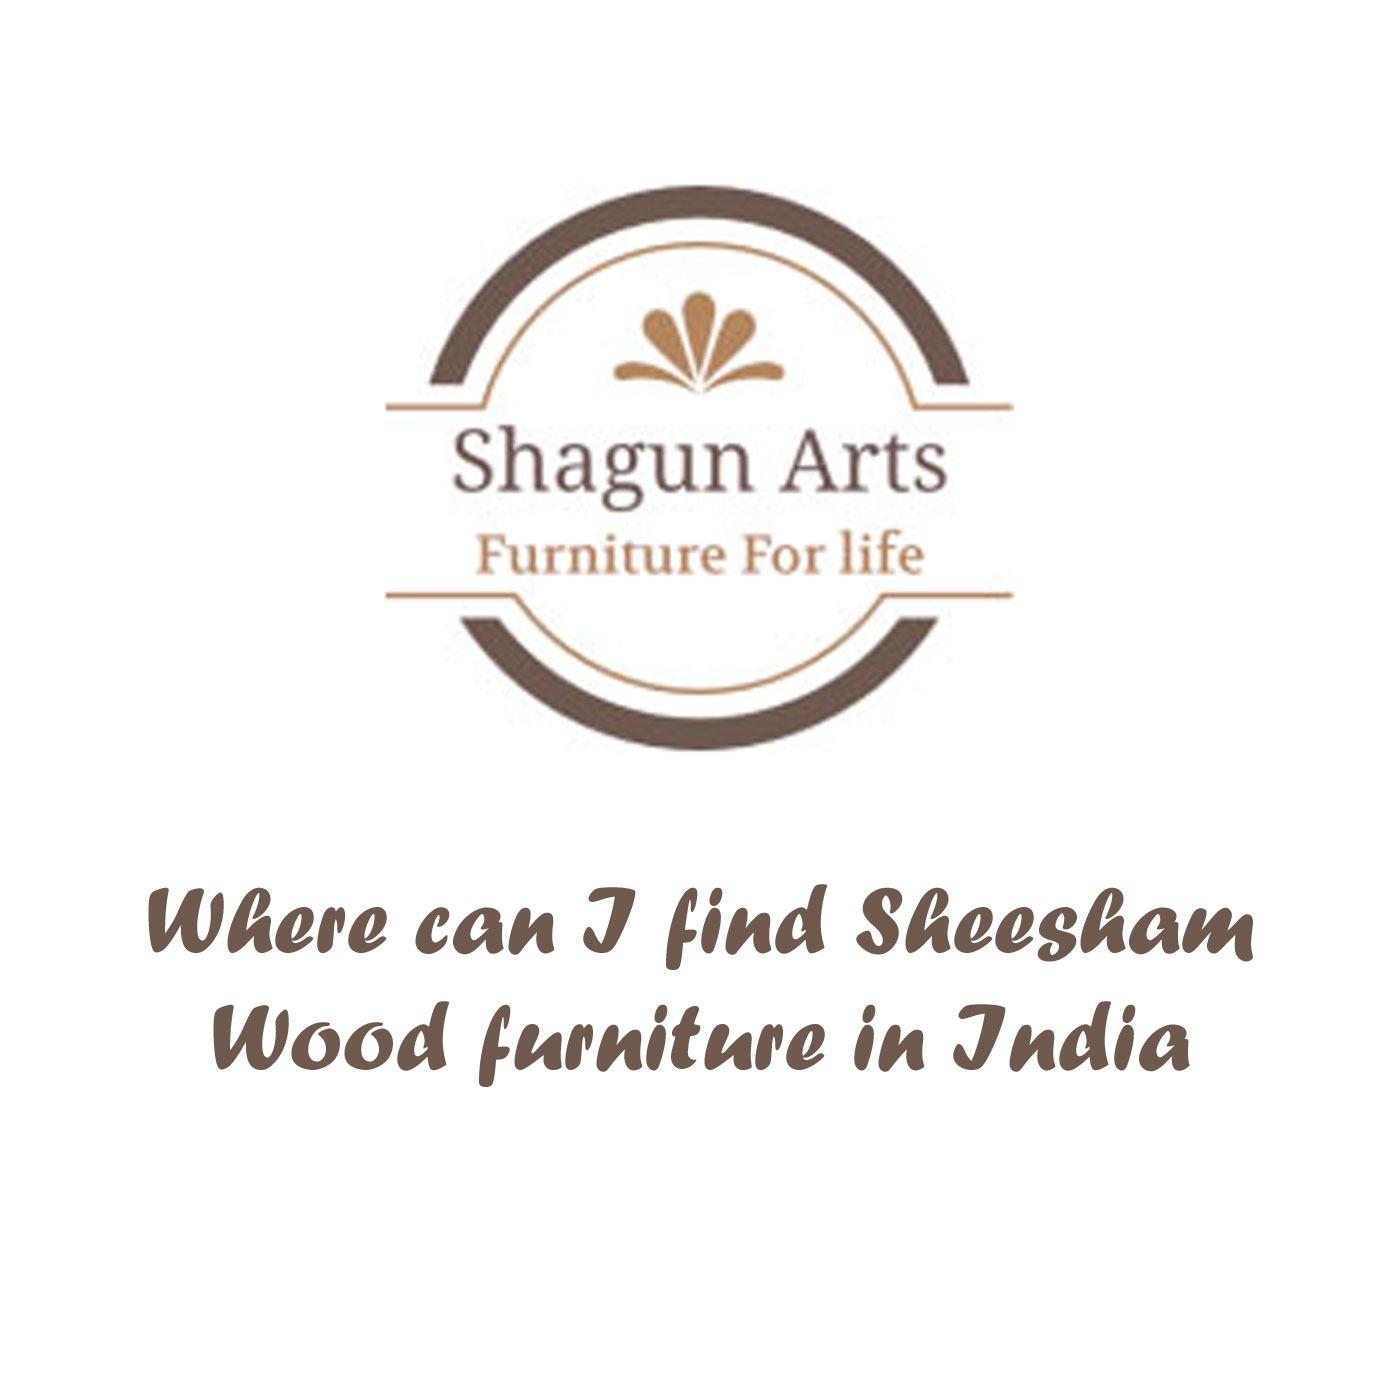 Where can I find Sheesham Wood furniture in India